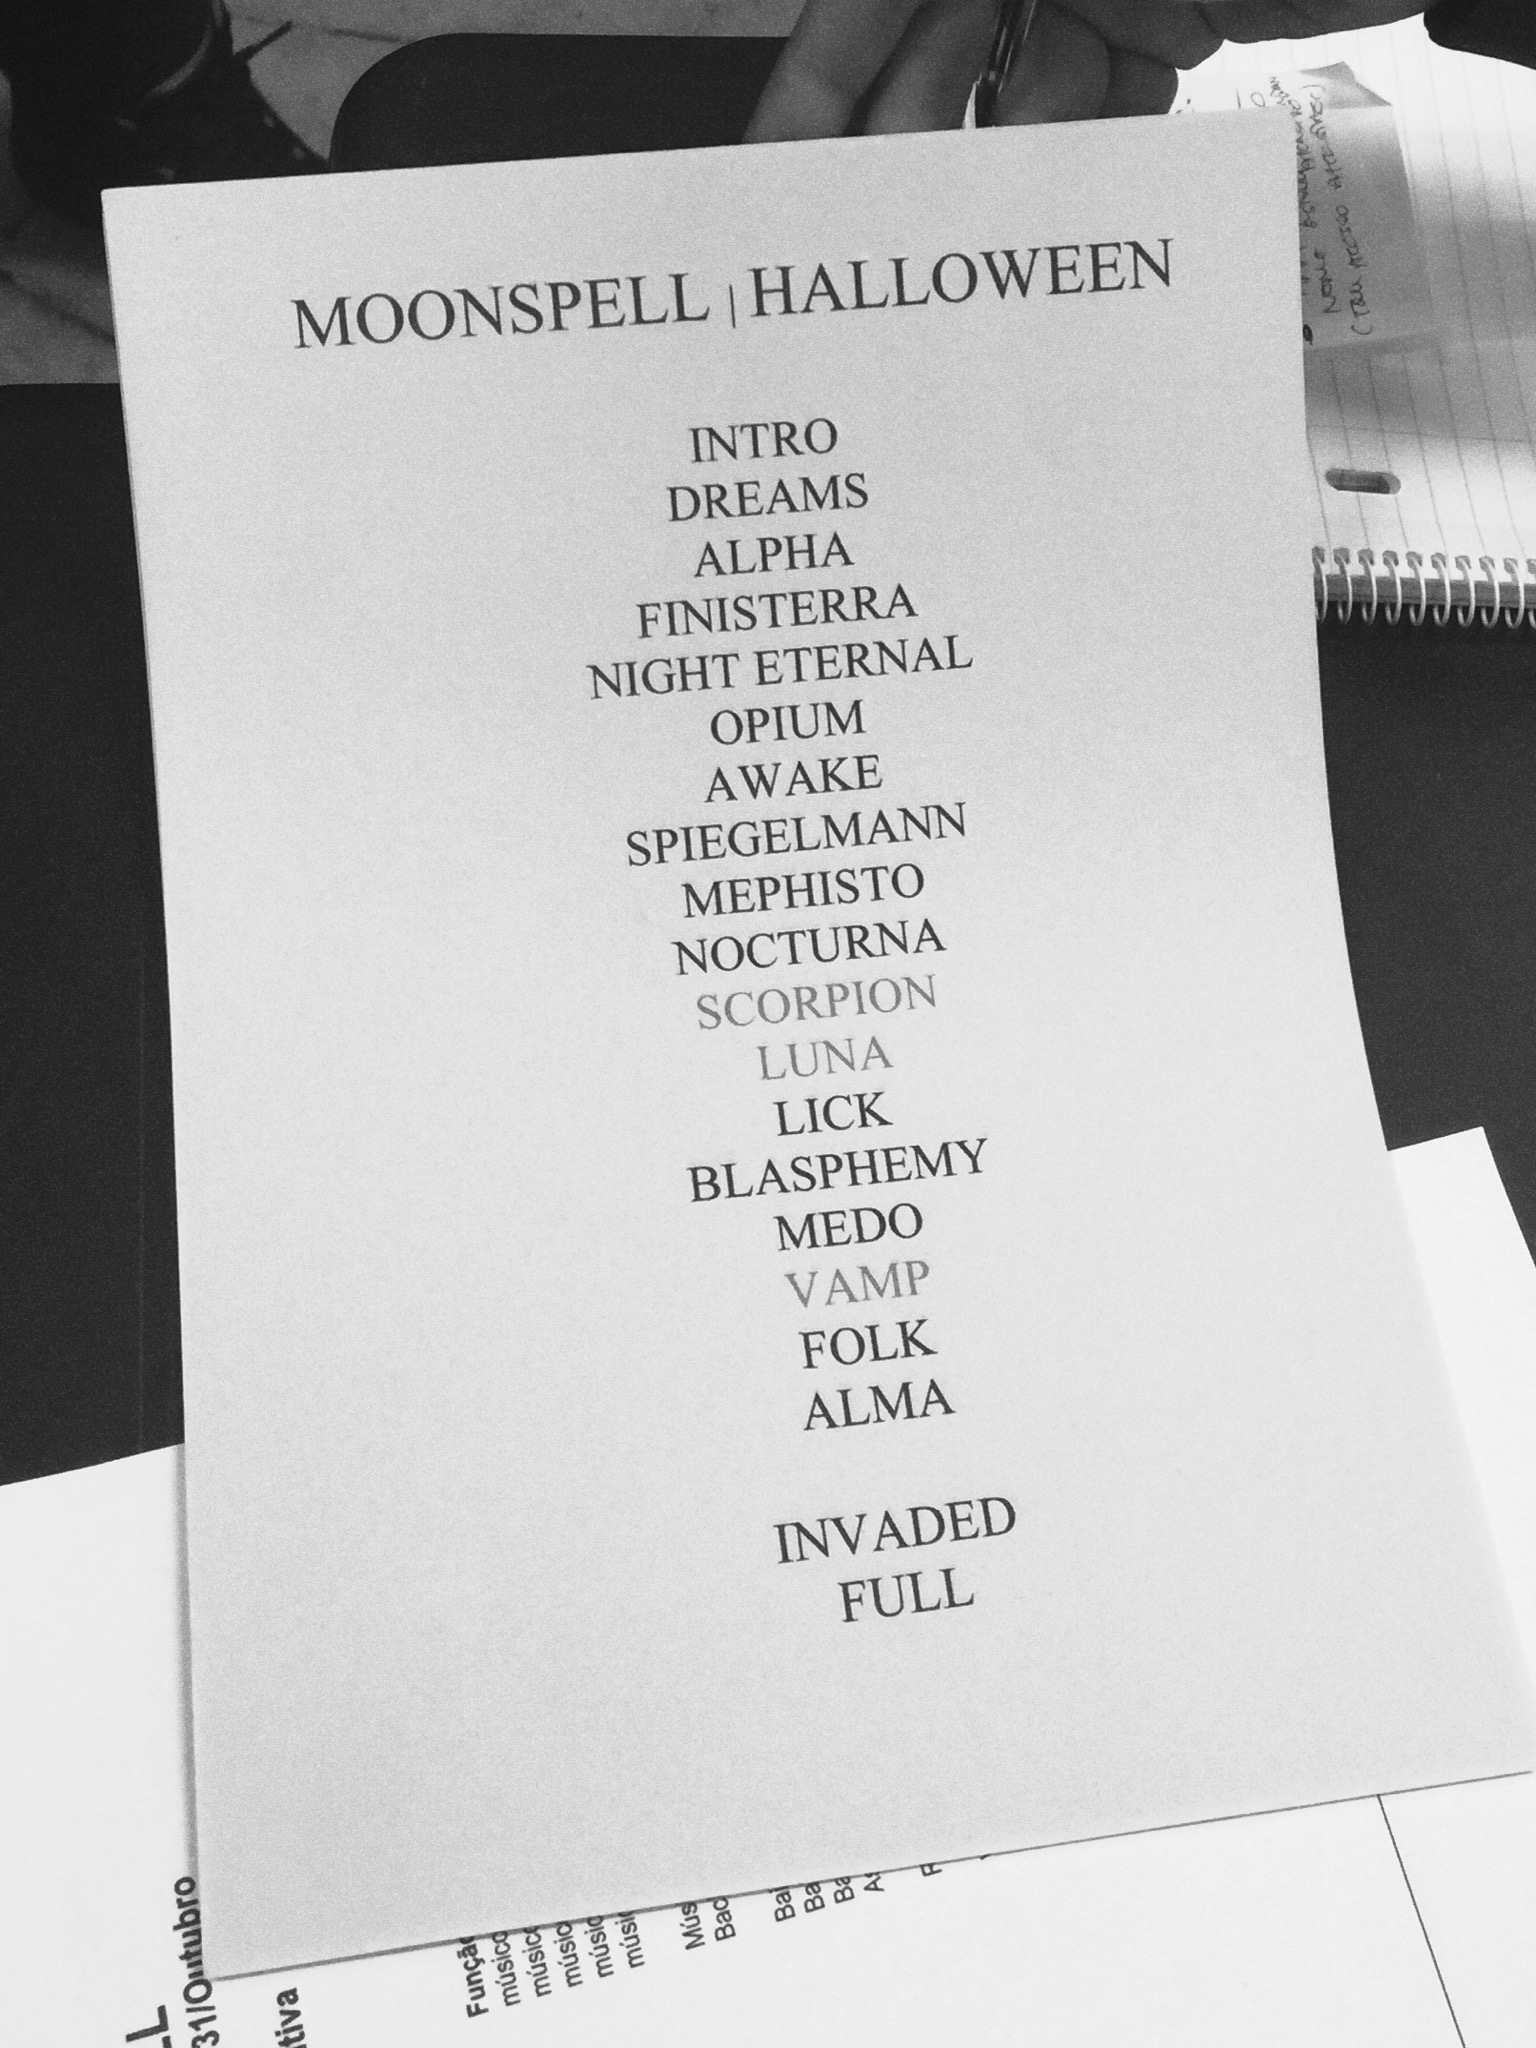 A setlist do concerto de Halloween dos Moonspell em Almada